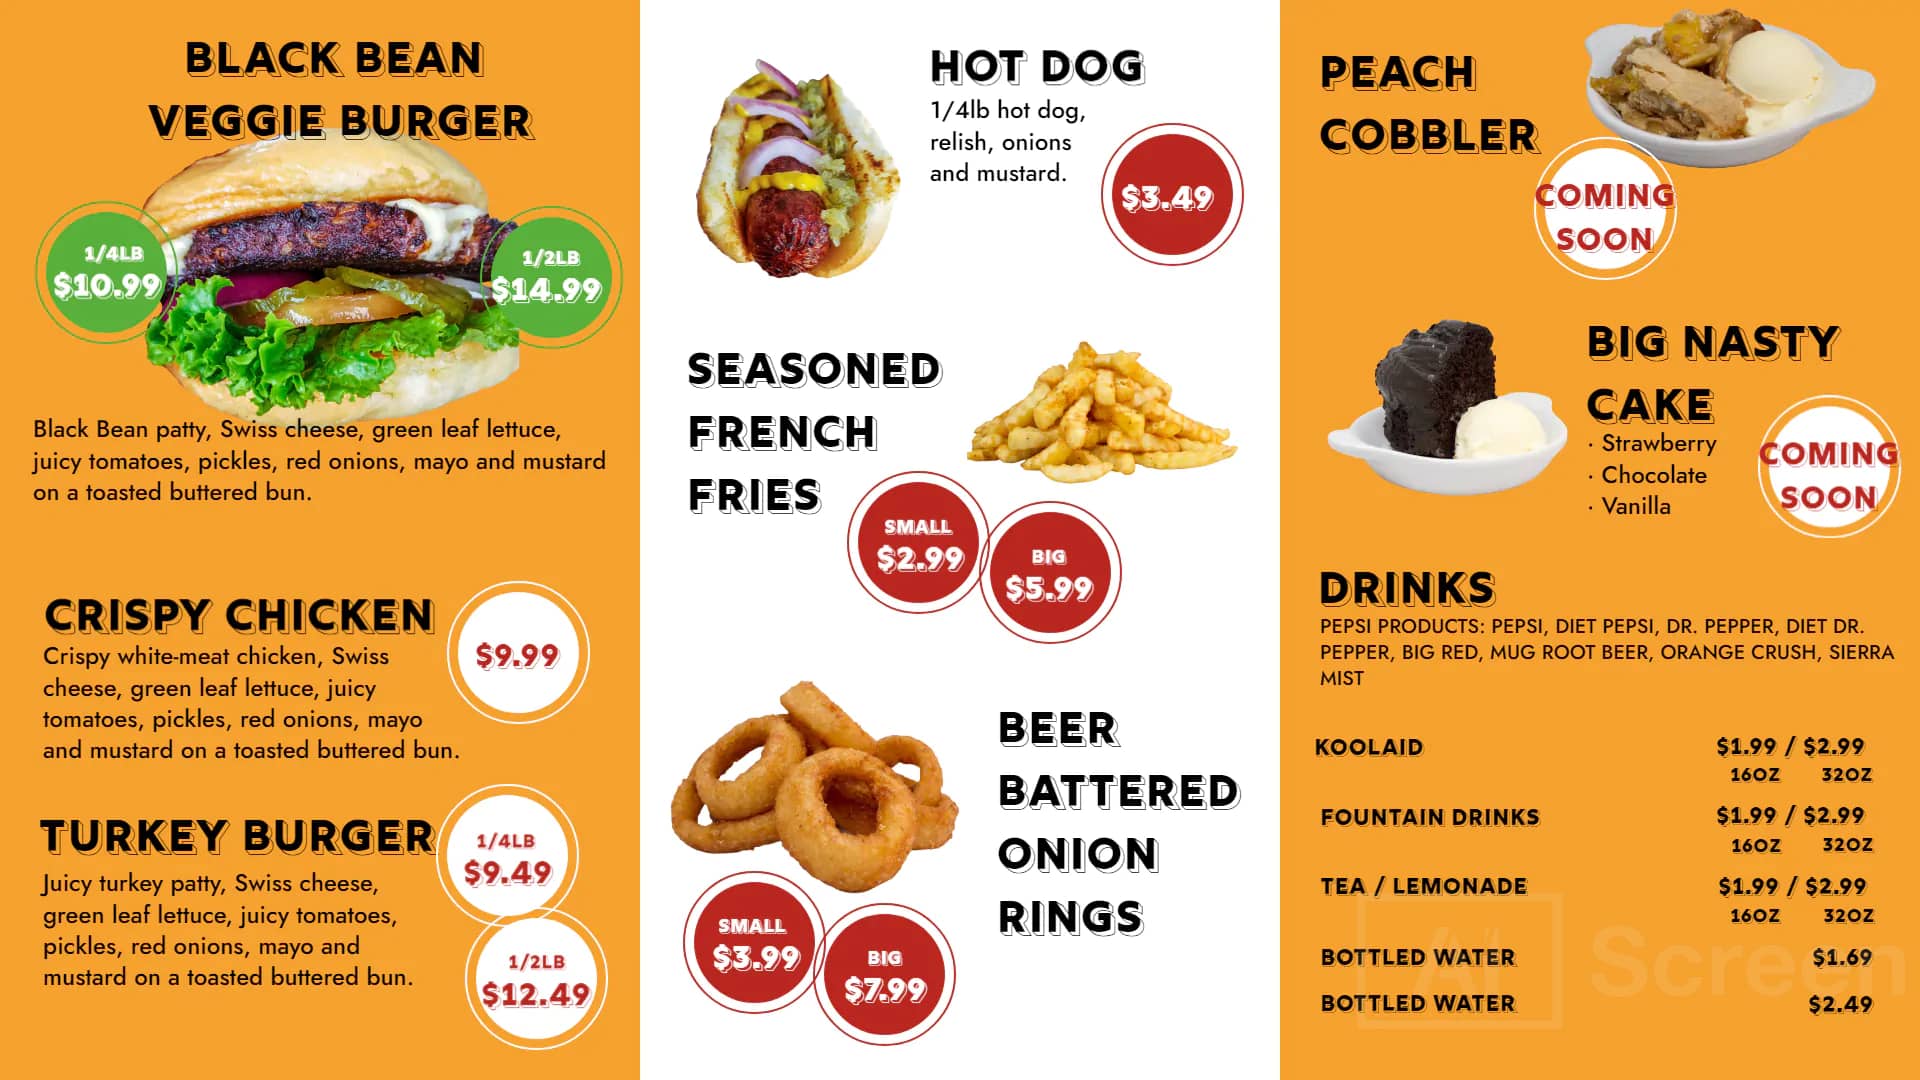 Digital menu board for sesame bun burger